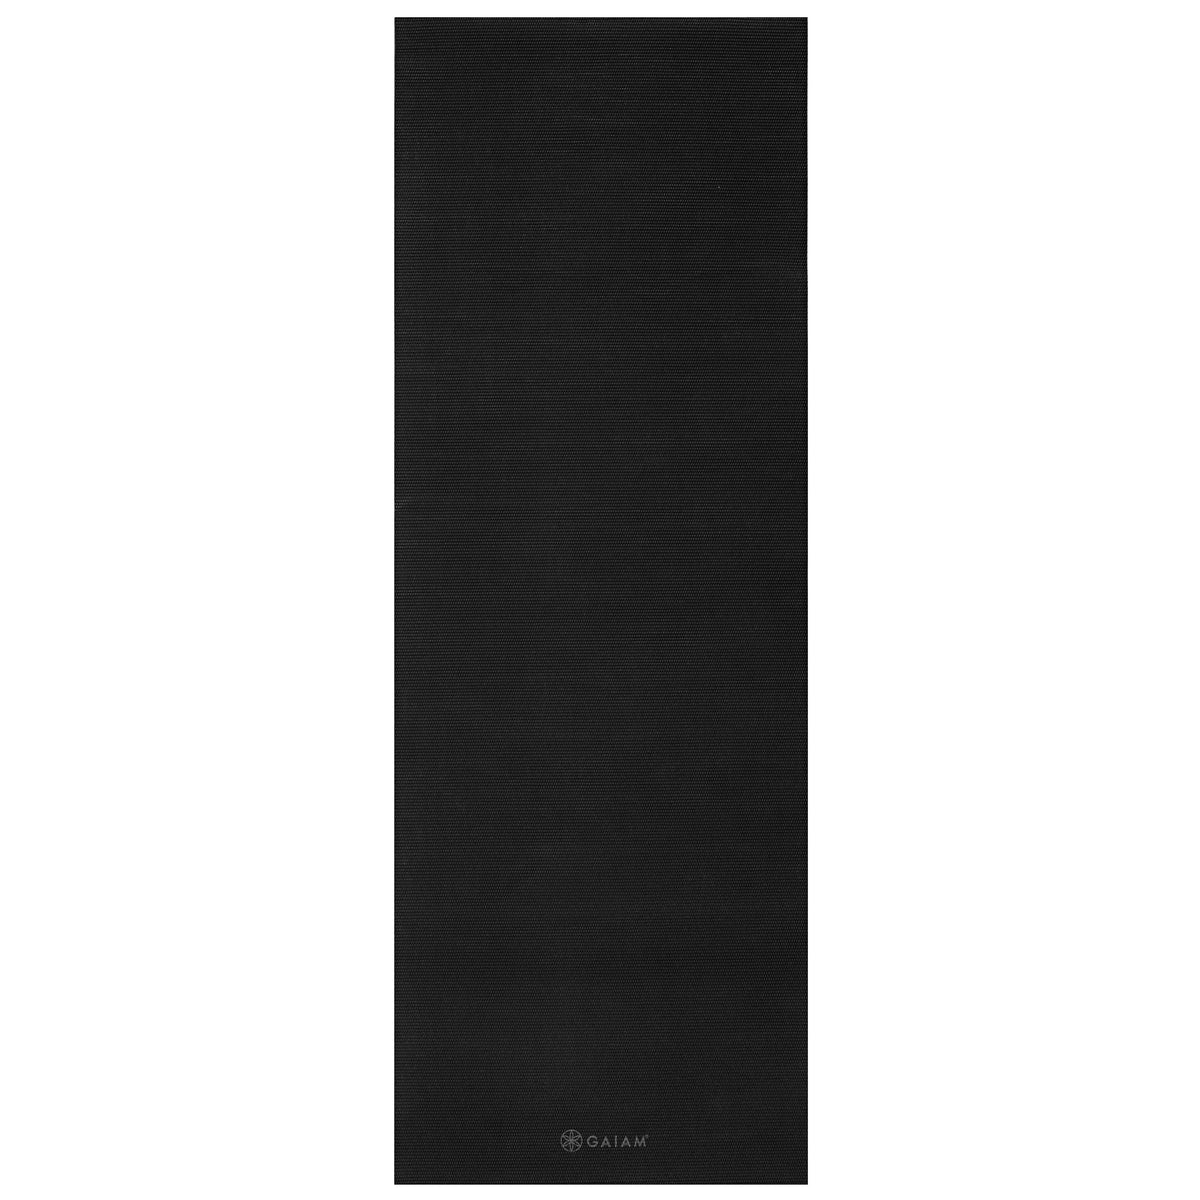 Gaiam Classic Solid Color Yoga Mat (5mm) Black flat